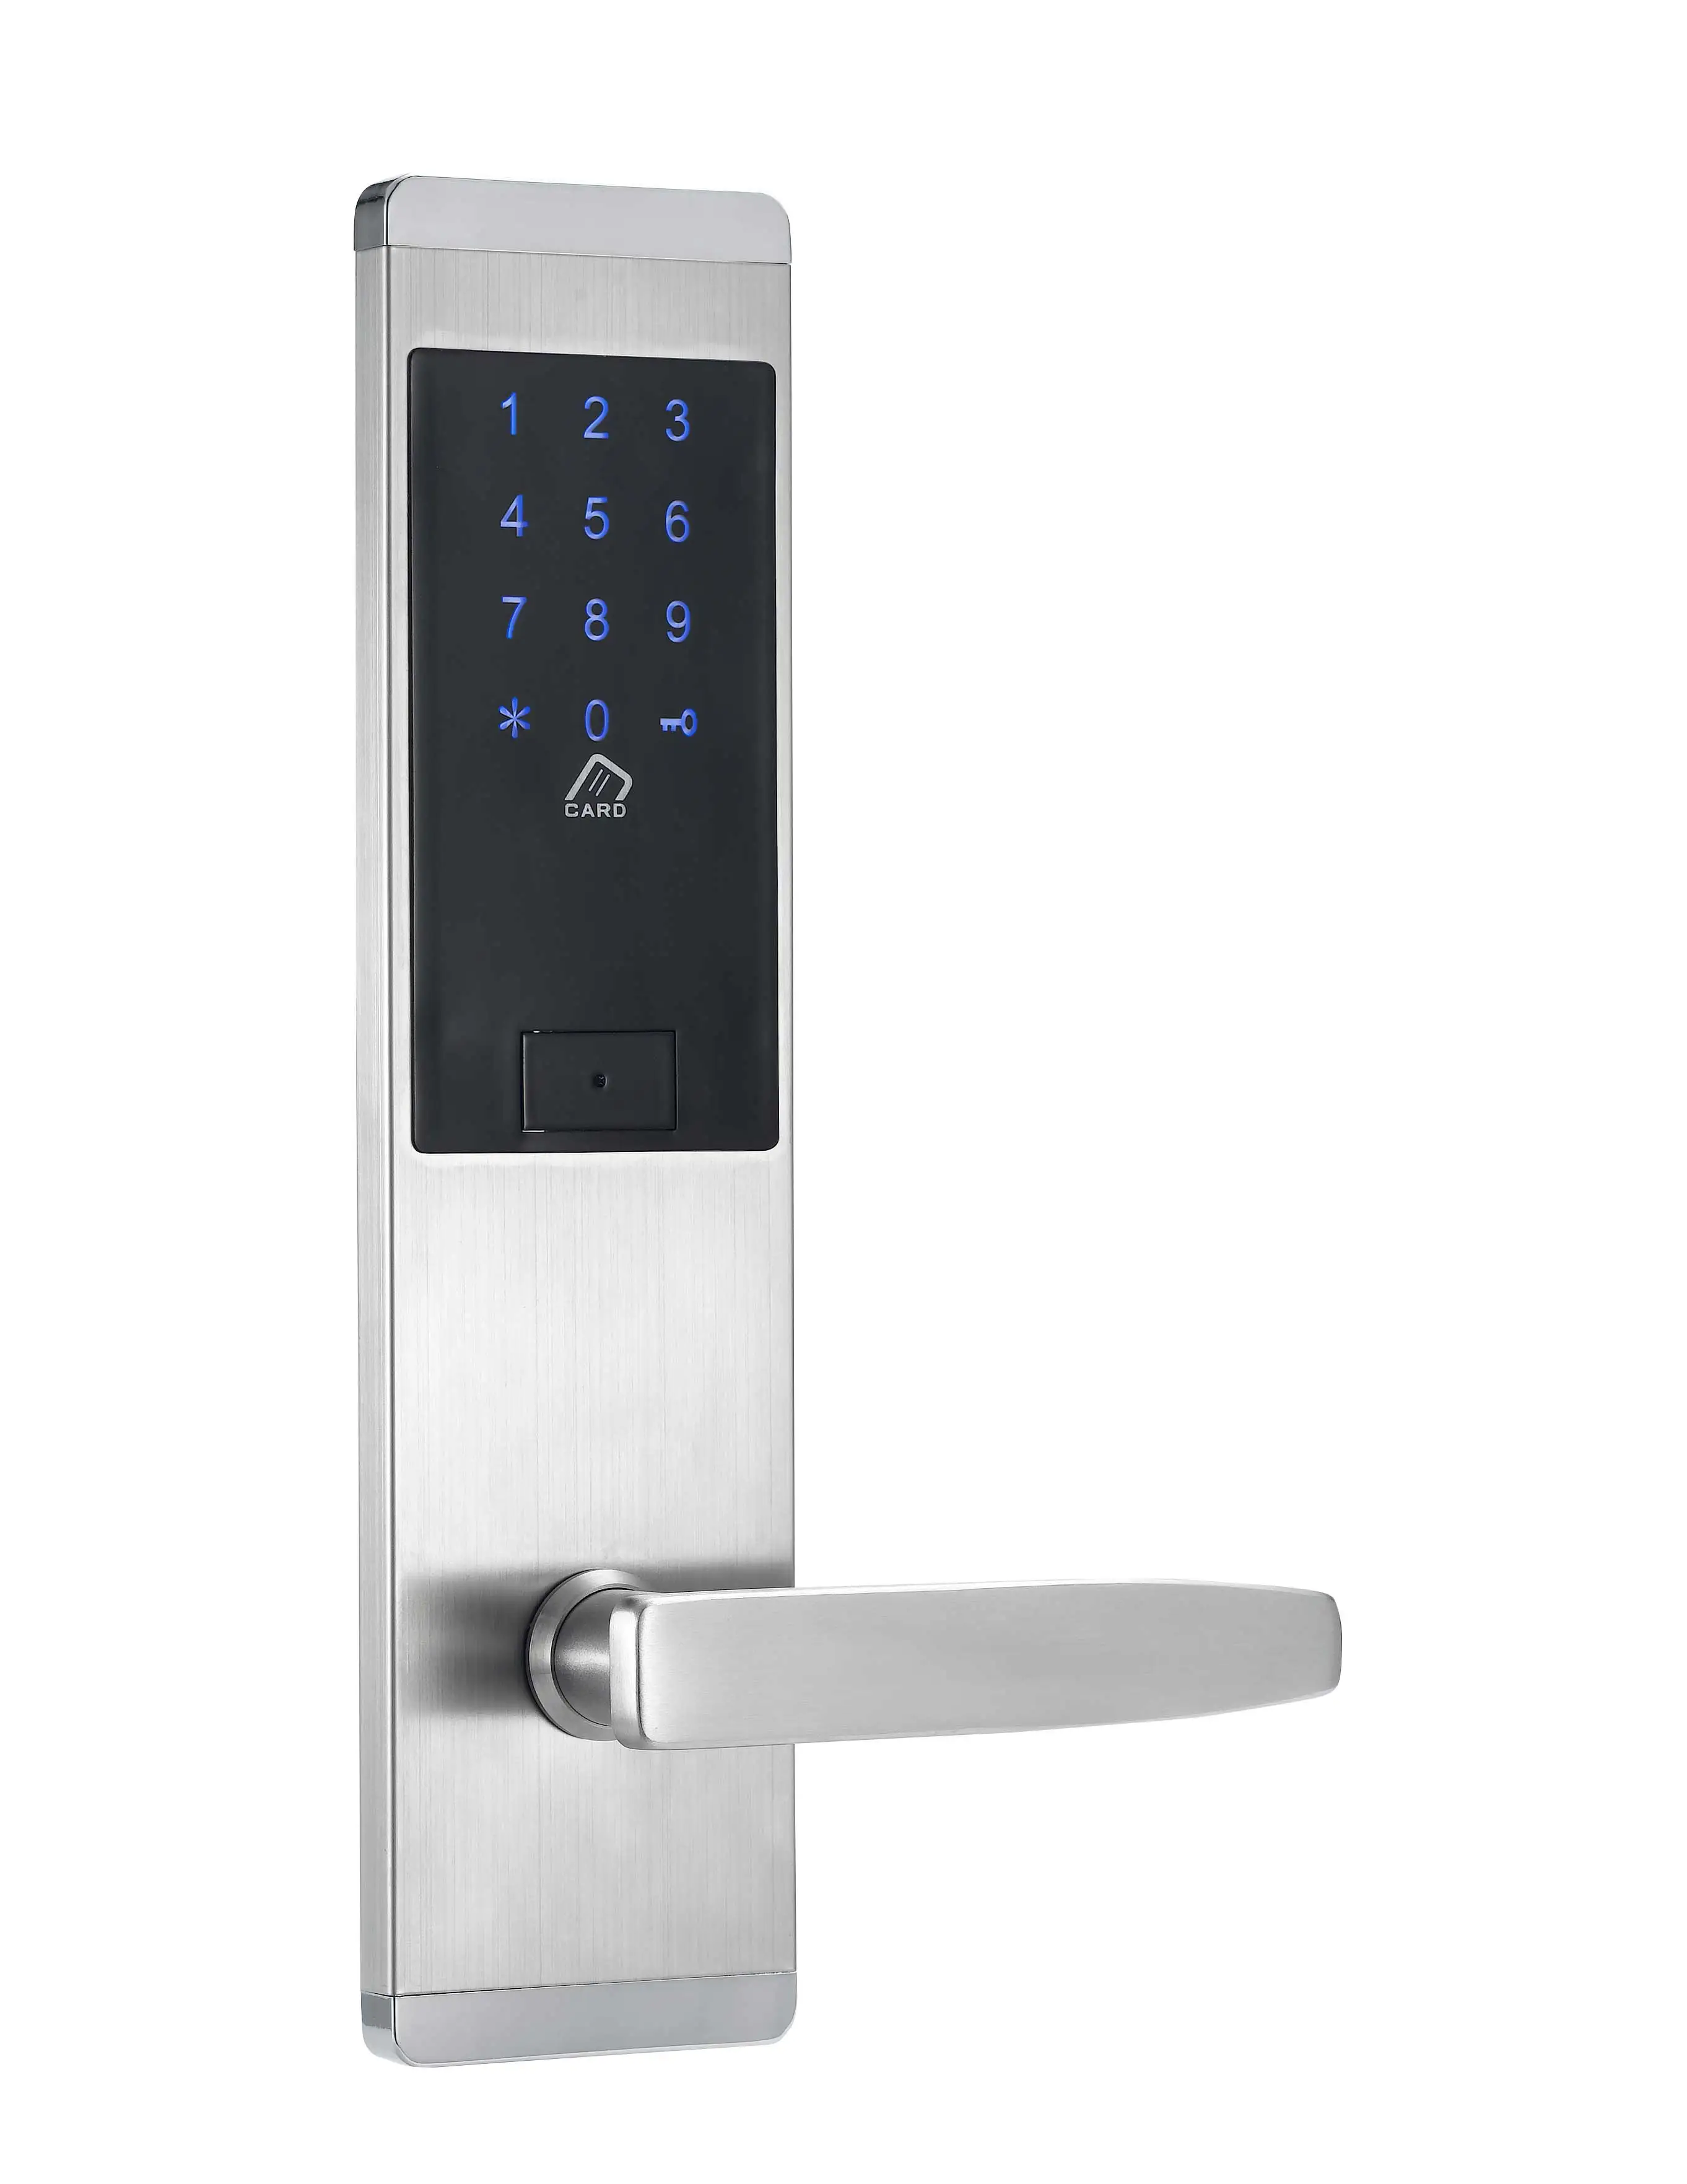 KPIOCCOK электронный дверной замок цифровой сенсорный экран Клавиатура кодовый дверной замок Пароль IC карта дверной замок для умного дома офиса MF301 - Цвет: silver